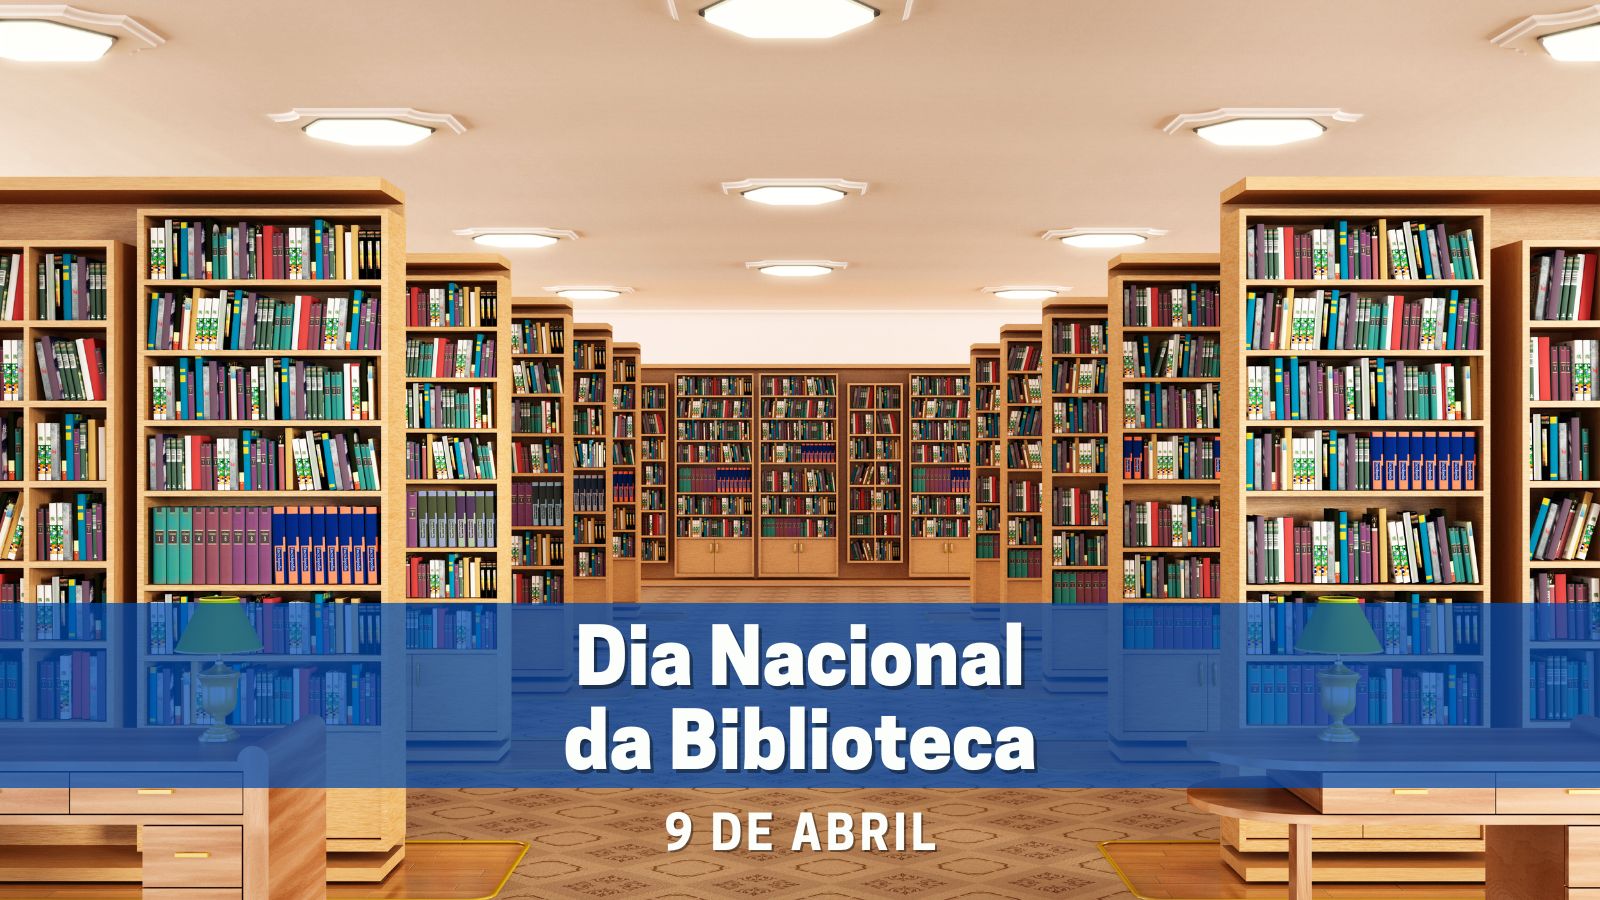 09 de abril dia nacional da biblioteca